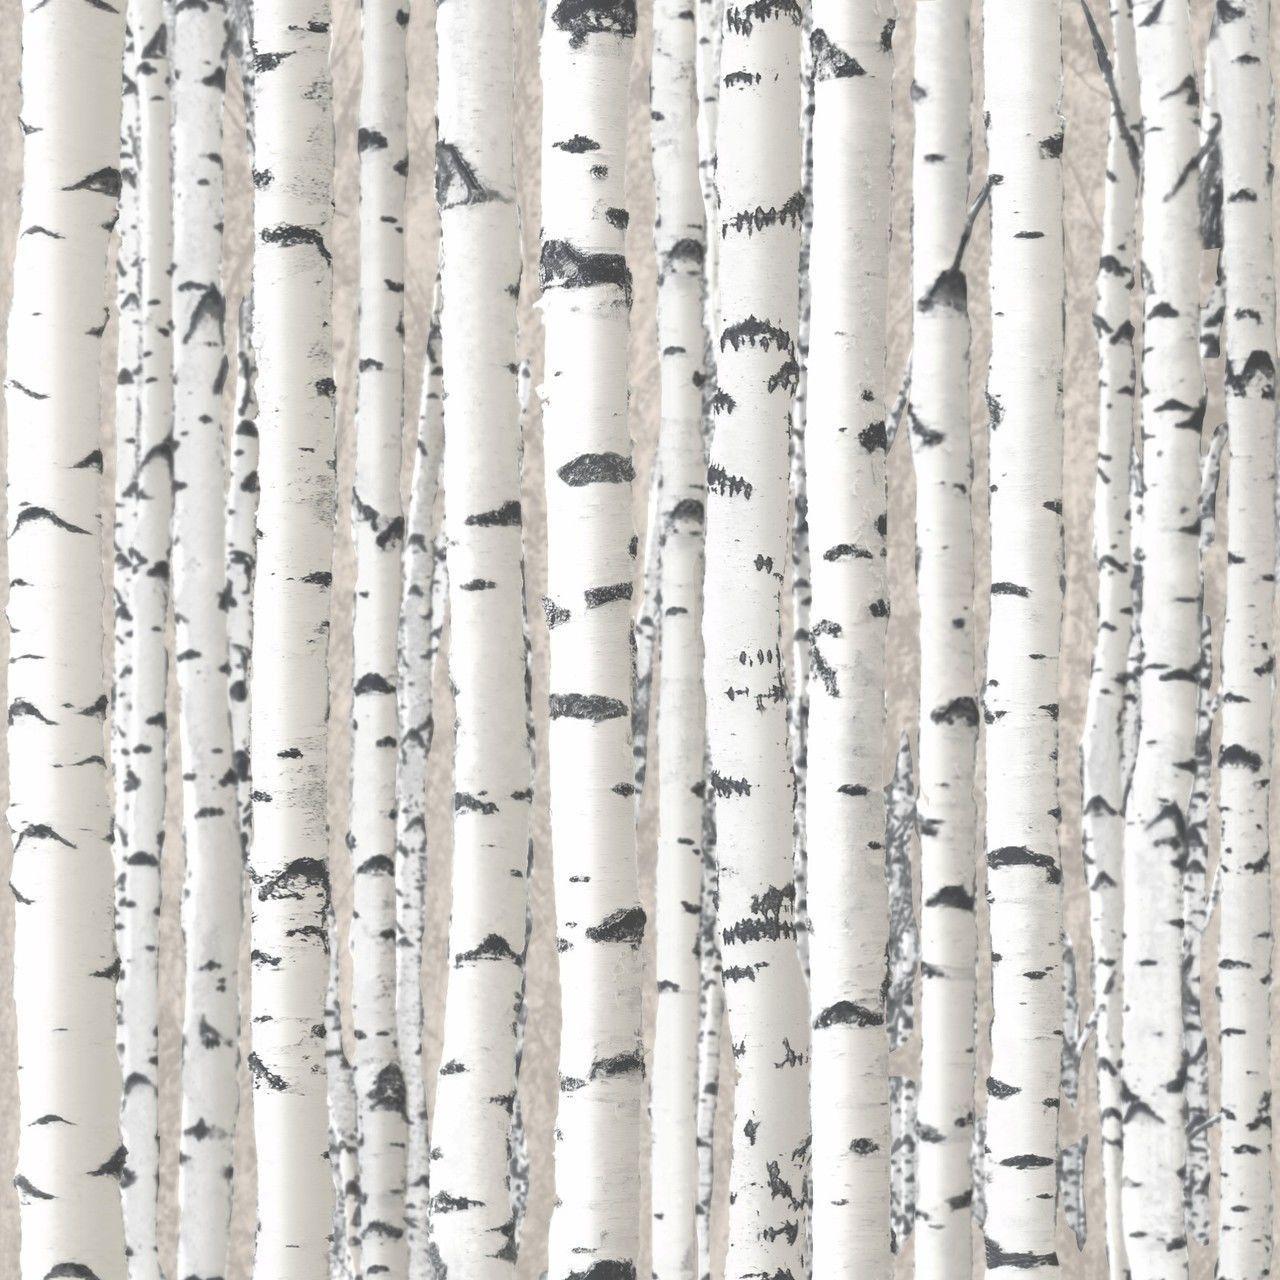 birch tree background